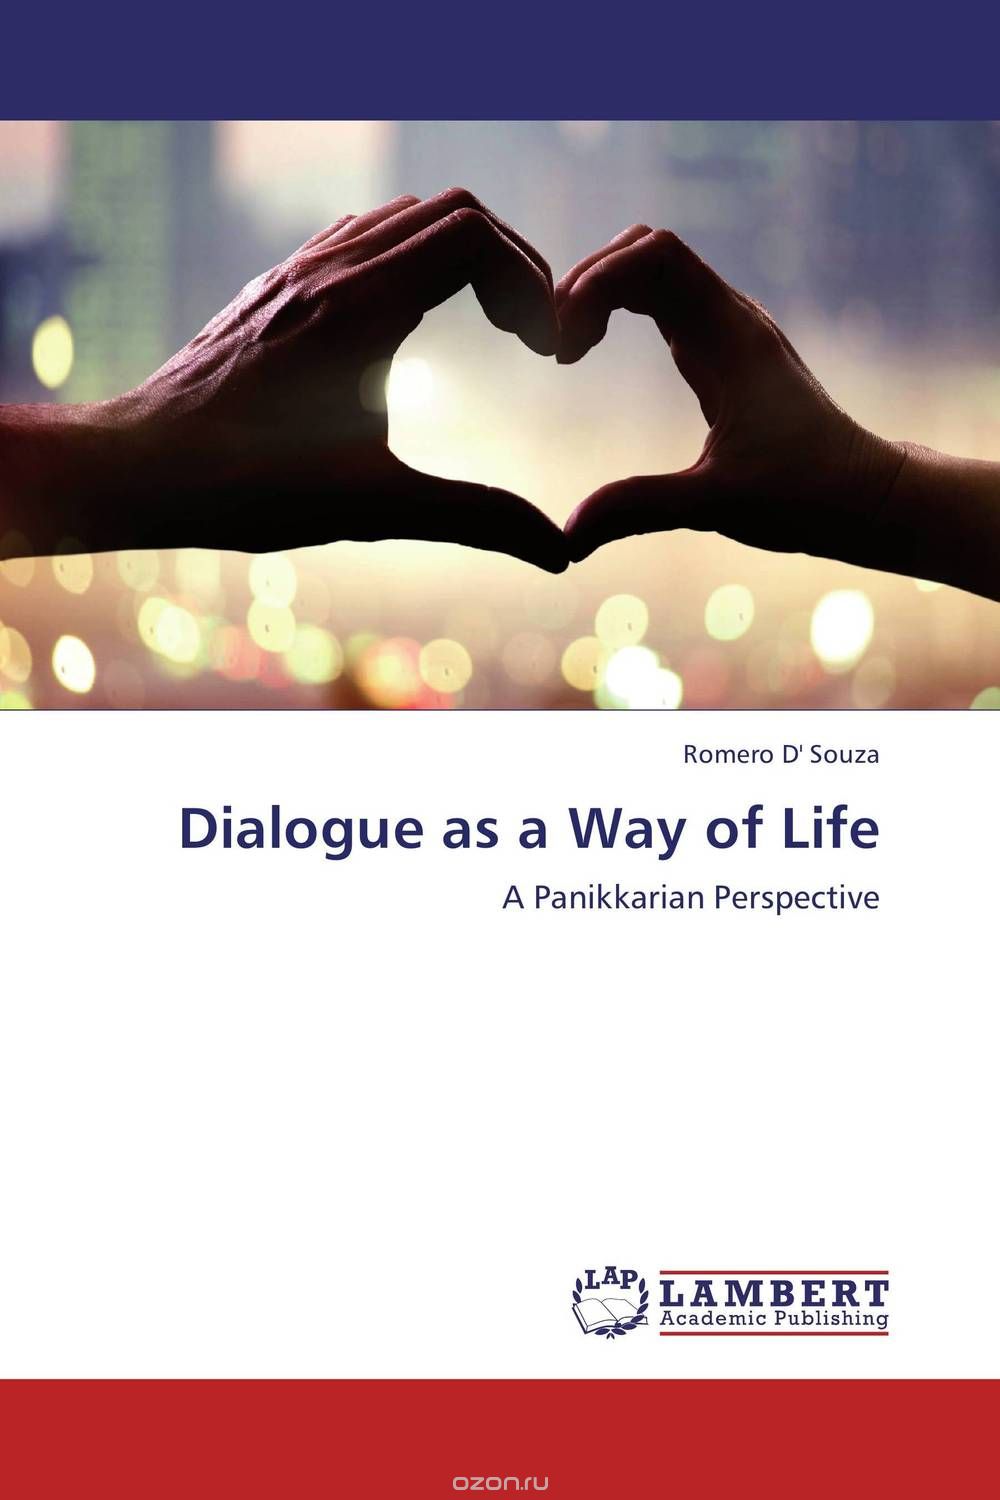 Скачать книгу "Dialogue as a Way of Life"